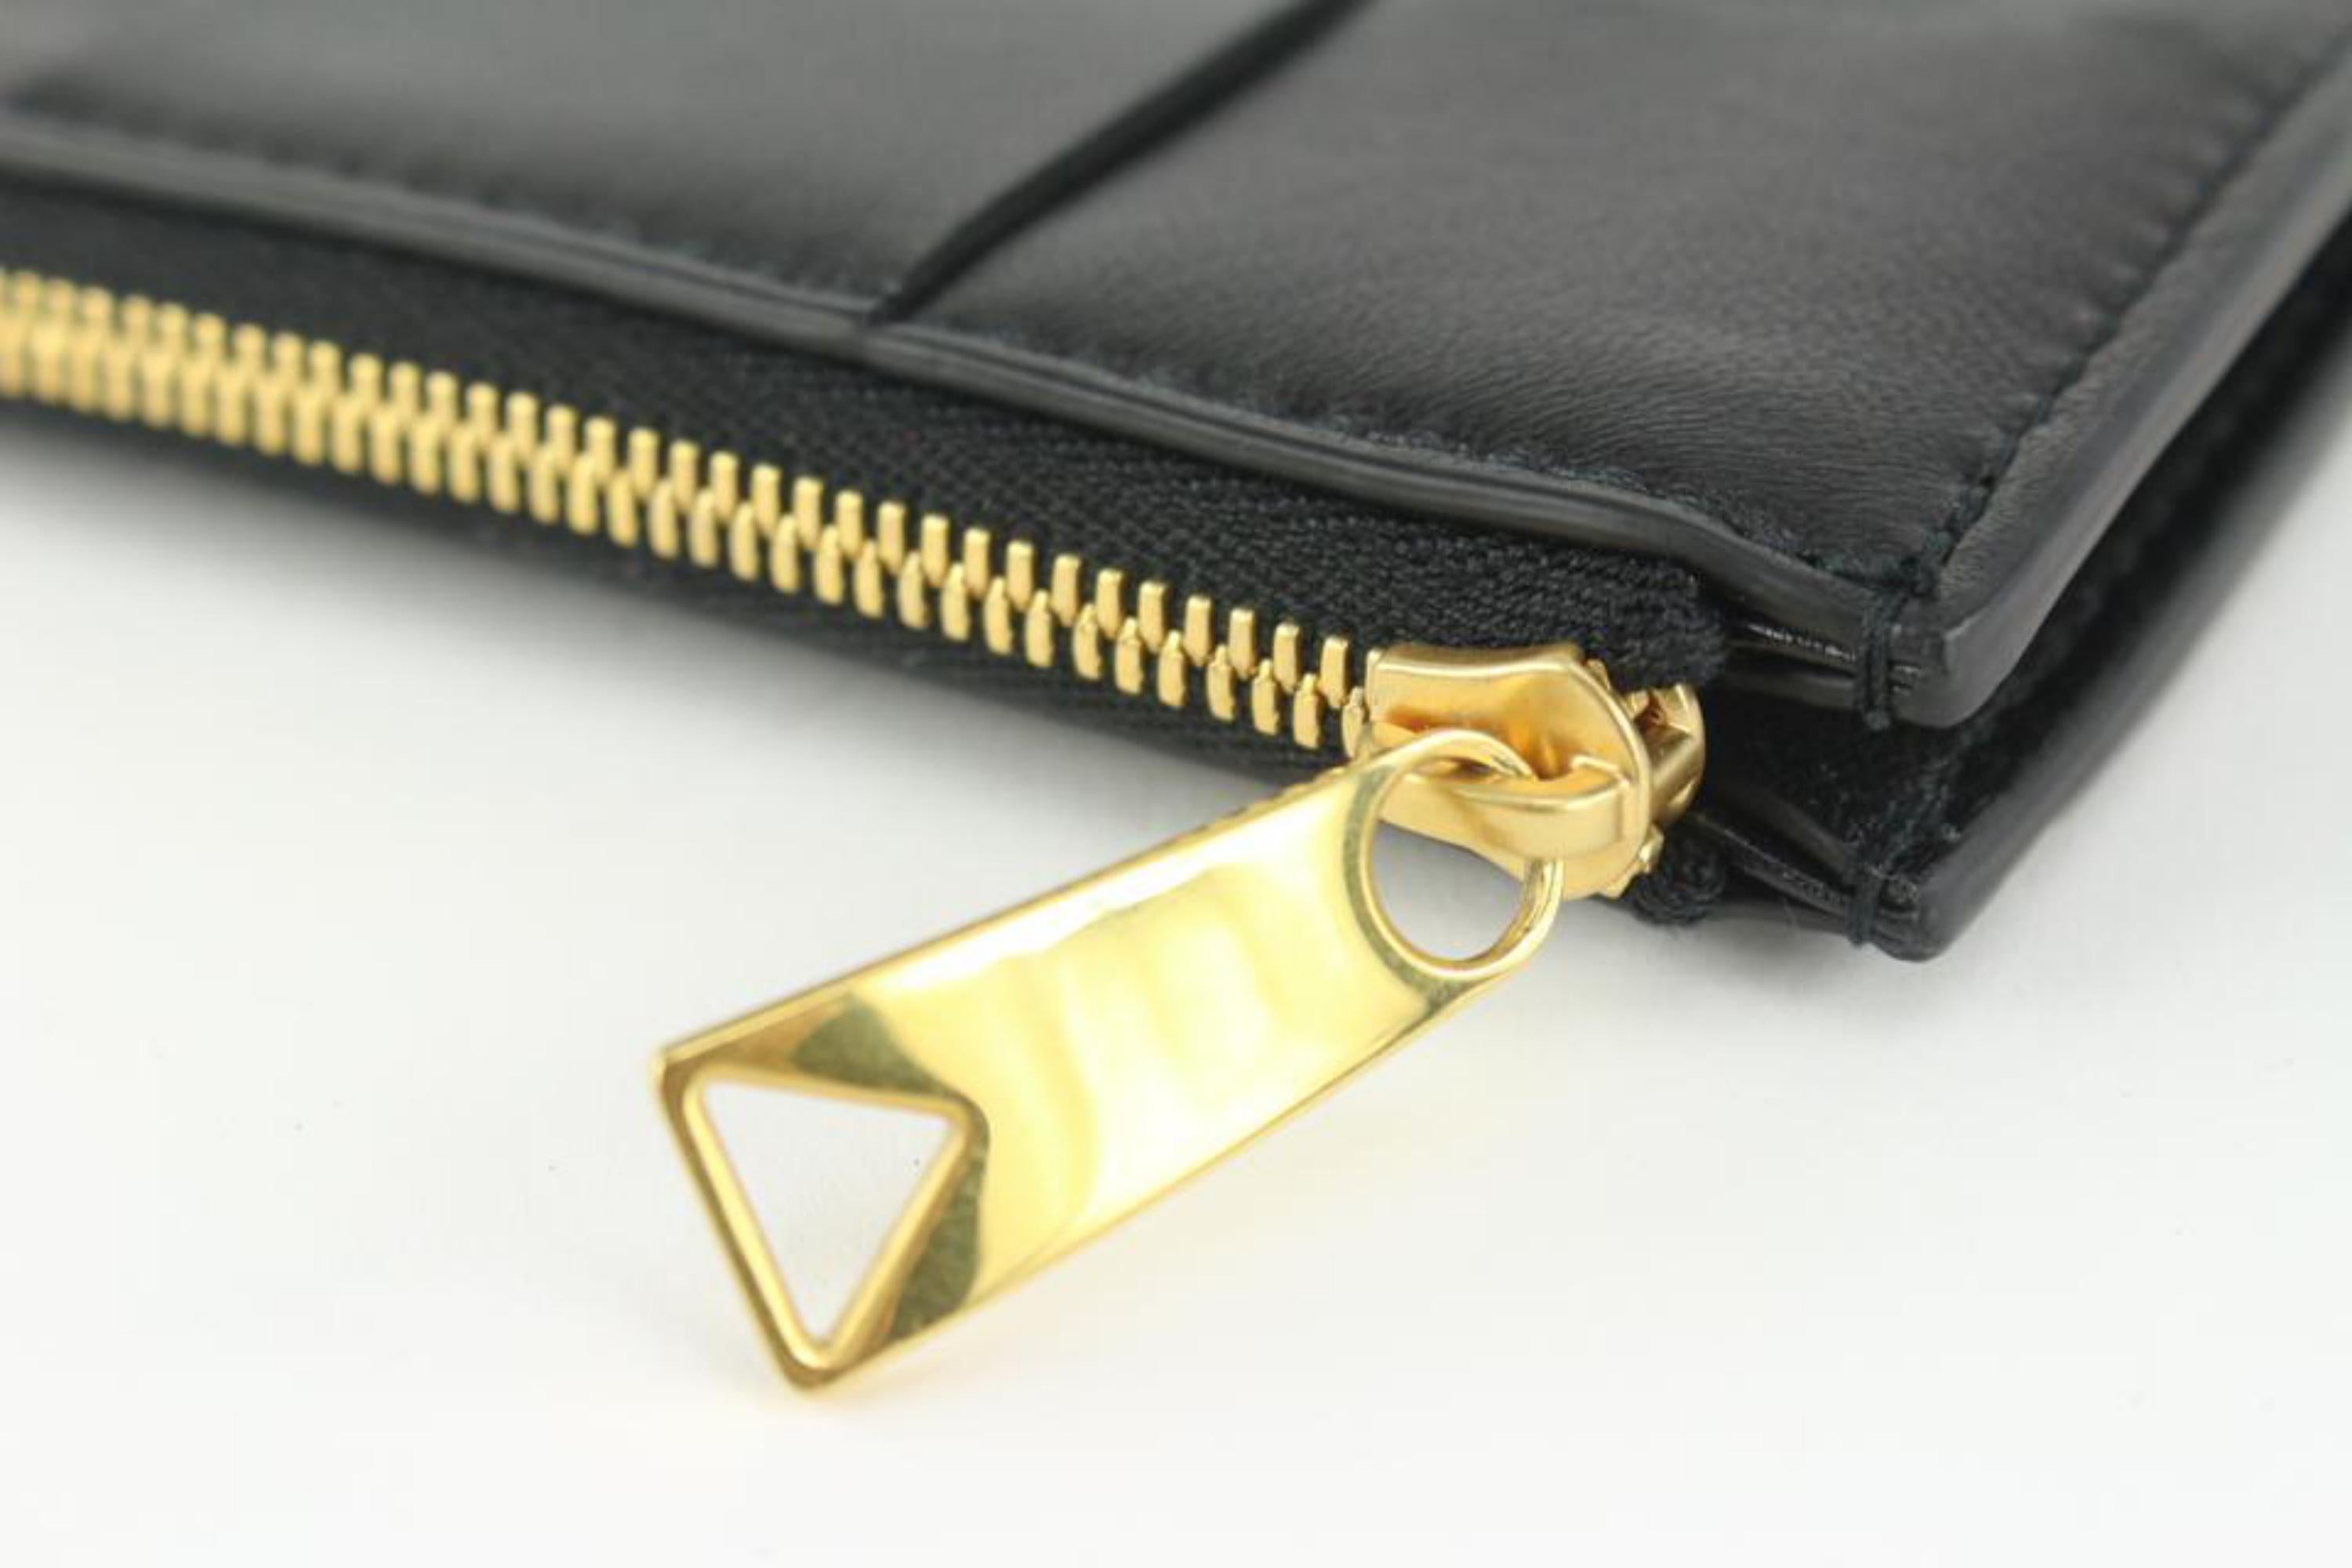 Bottega Veneta Black Intrecciato Leather Zipped Card Holder 1123bv34 For Sale 1